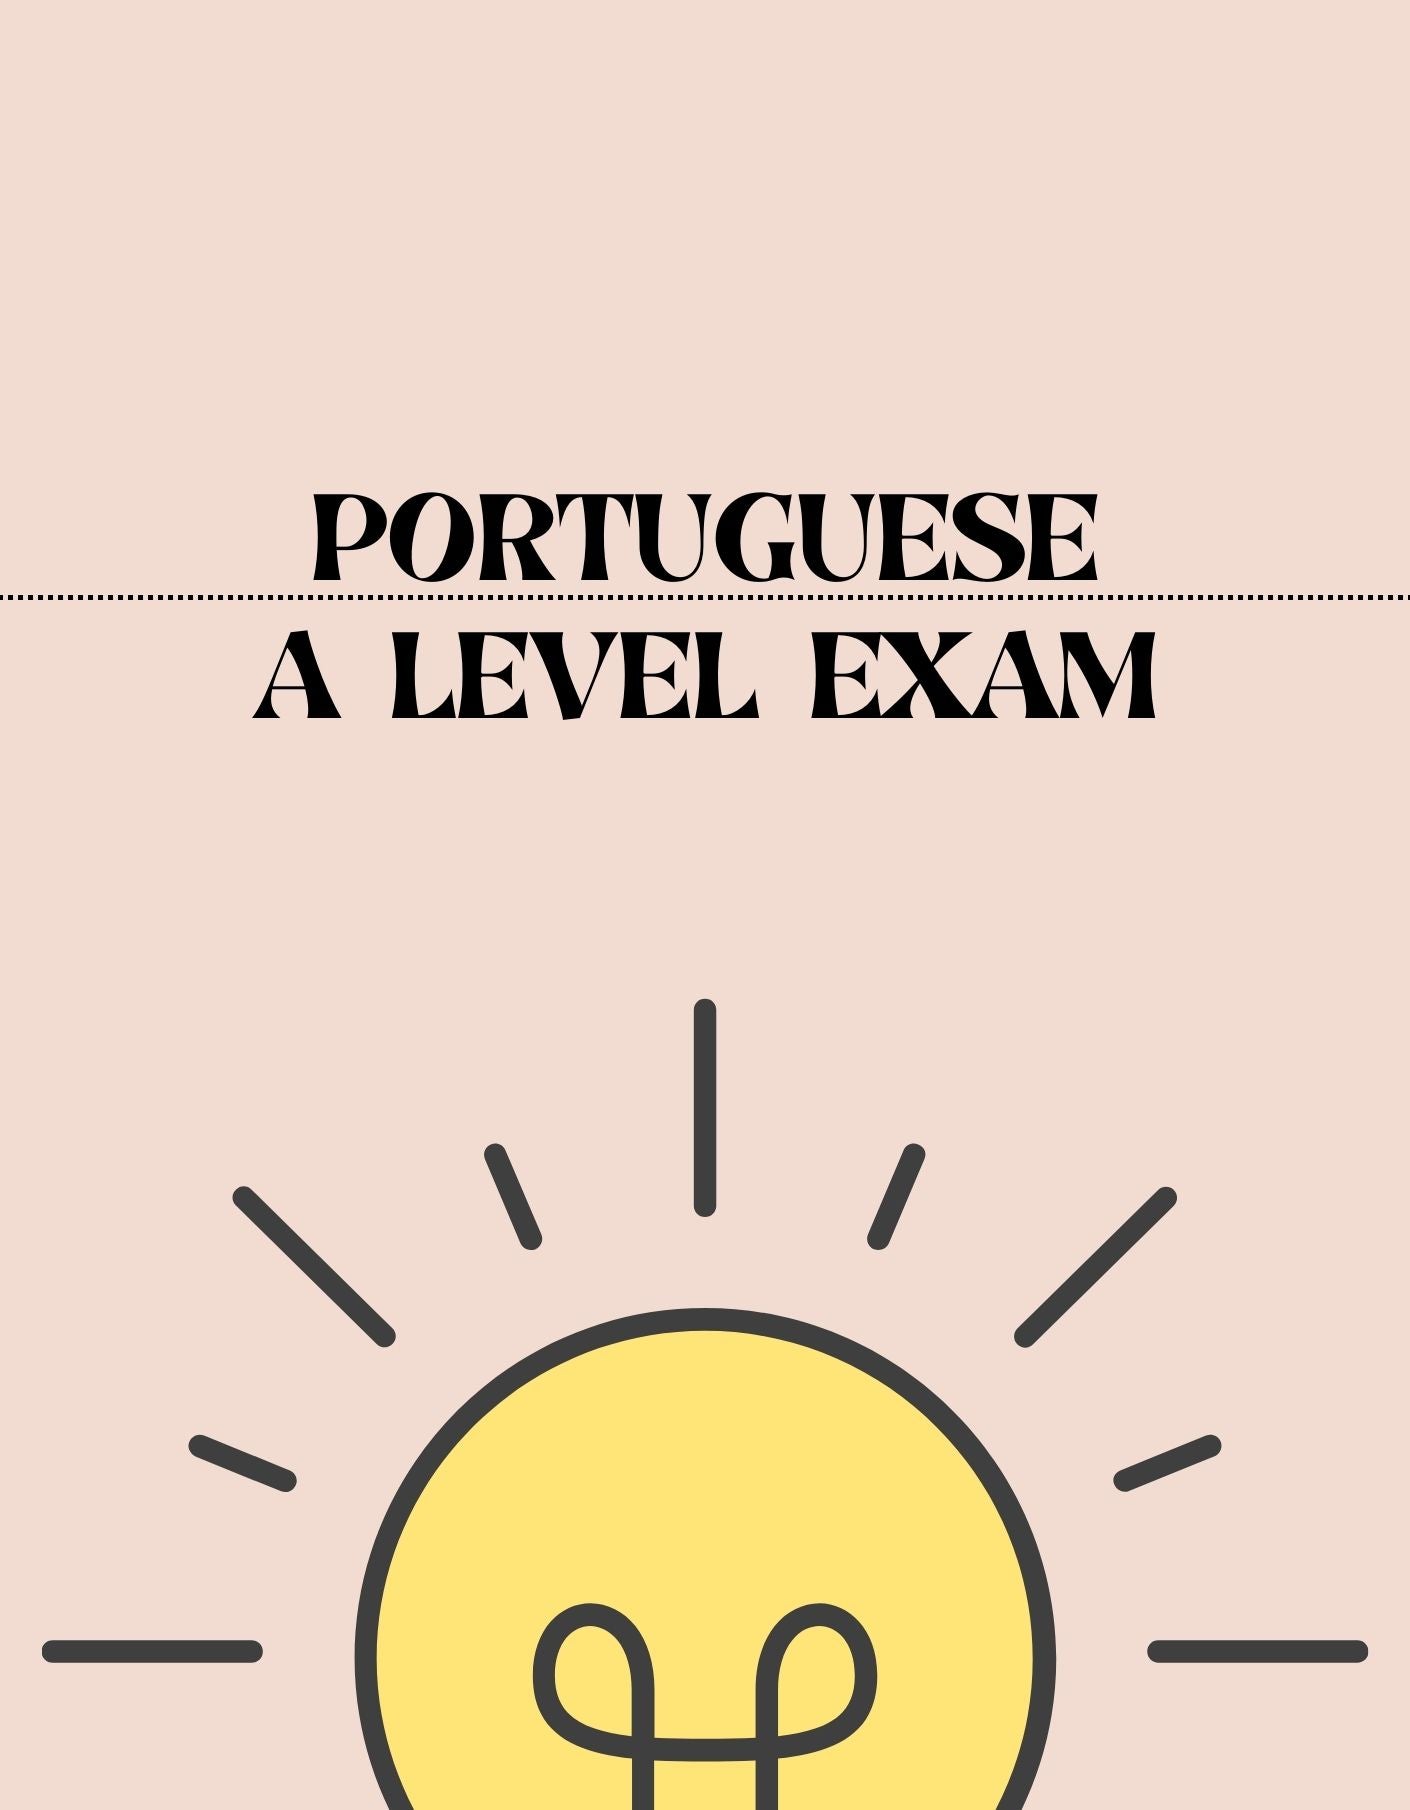 A Level - Portuguese Exam - Exam Centre Birmingham Limited